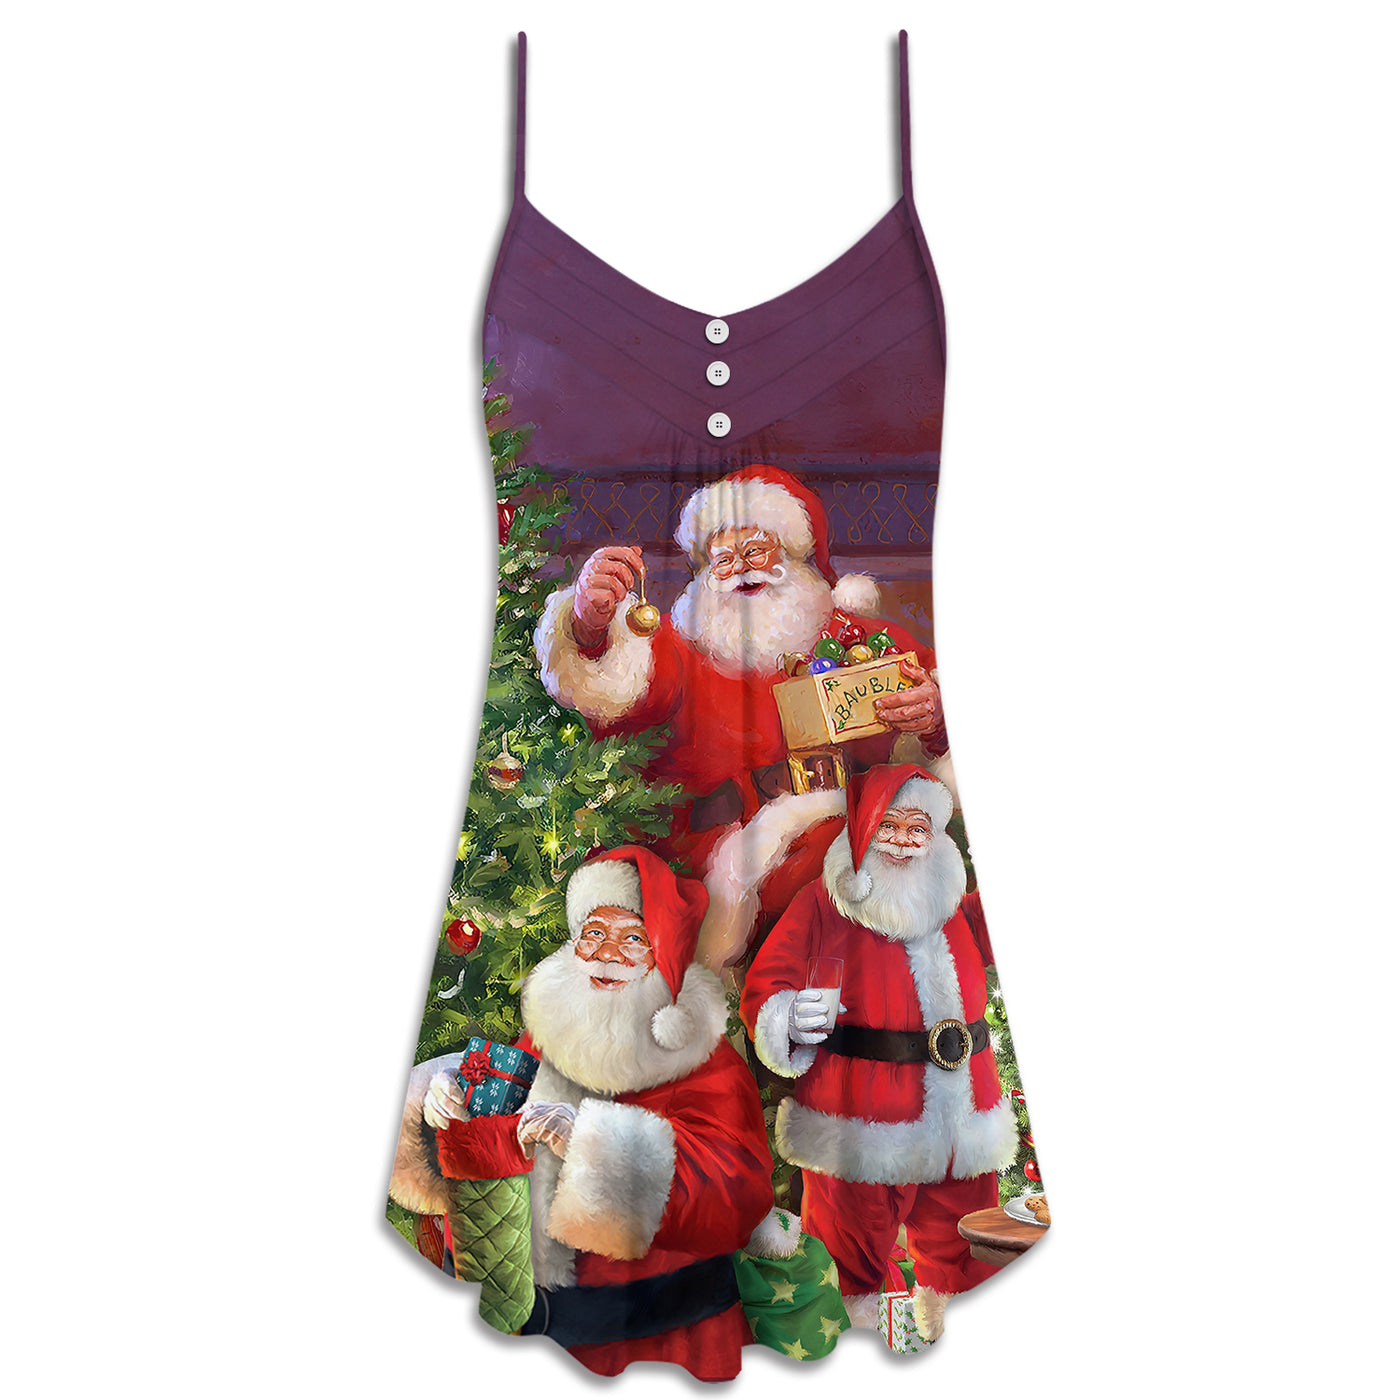 Christmas Funny Santa Claus Gift For Xmas So Happy - V-neck Sleeveless Cami Dress - Owls Matrix LTD